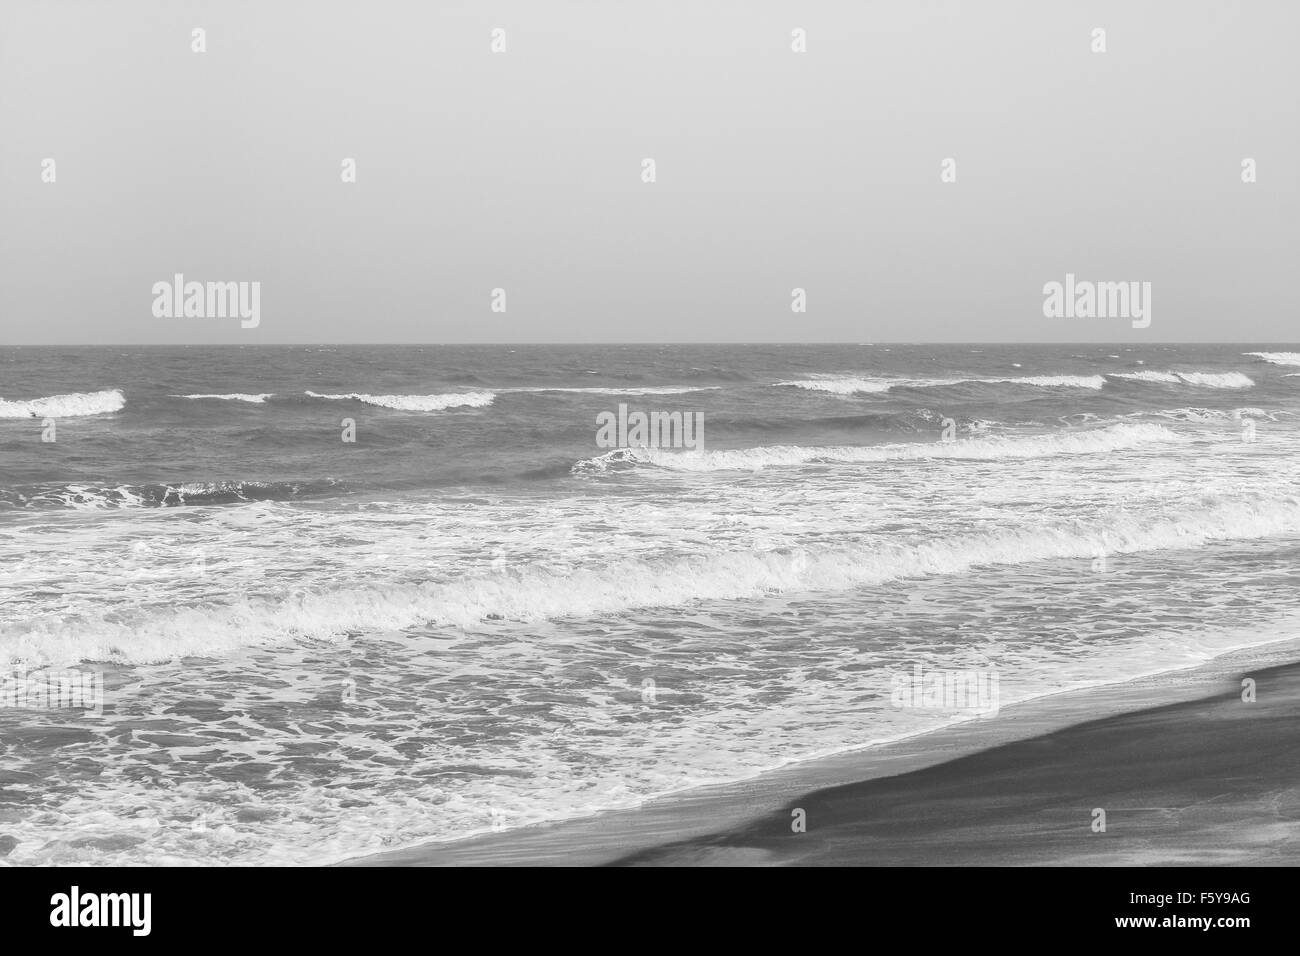 Schiumato in arrivo onde del mare su una spiaggia tropicale. Queste onde impetuose lasciare profili curvi sulla spiaggia. Immagine in bianco e nero. Foto Stock